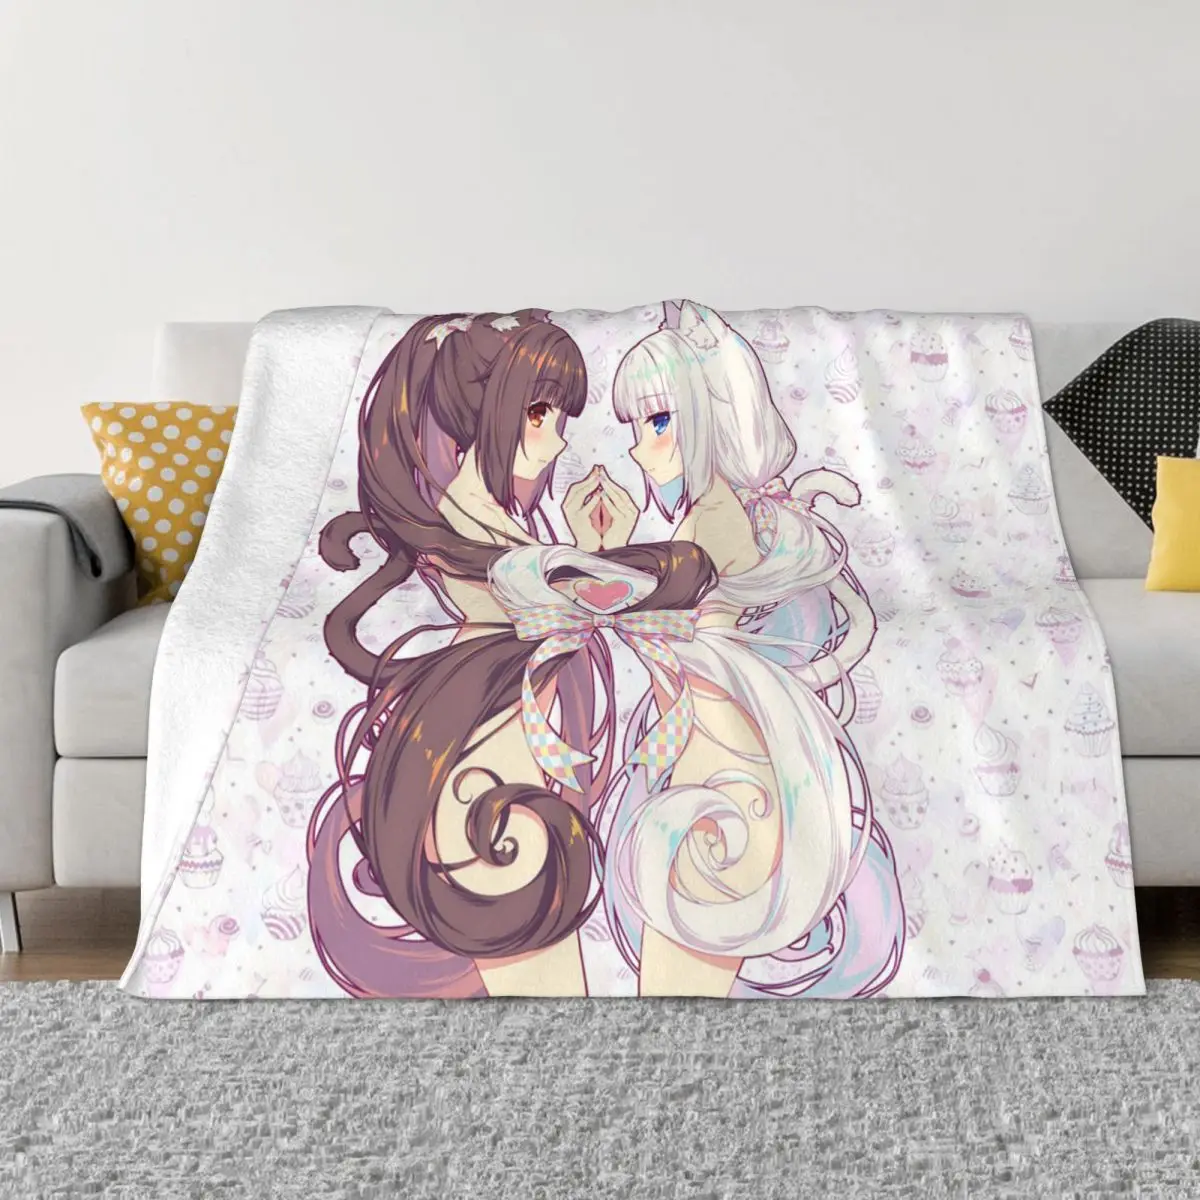 

Nekopara Blankets Velvet Printed Girls Anime Multifunction Ultra-Soft Throw Blanket for Sofa Travel Bedding Throws